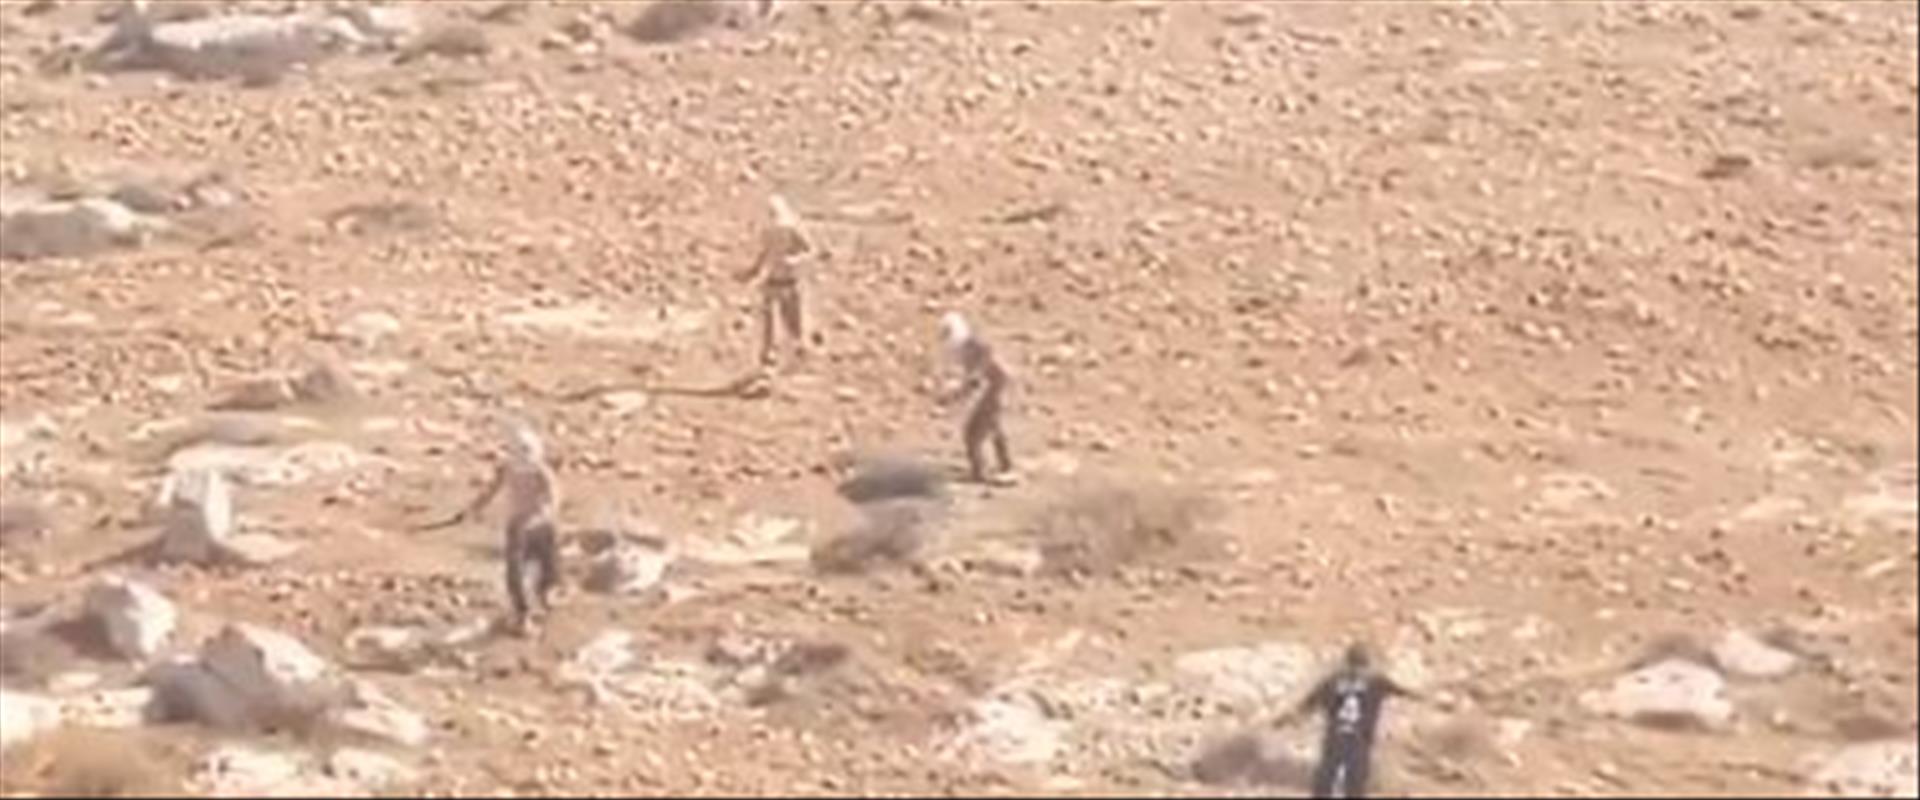 מתנחלים מיידים אבנים אל פלסטינים בדרום הר חברון 28